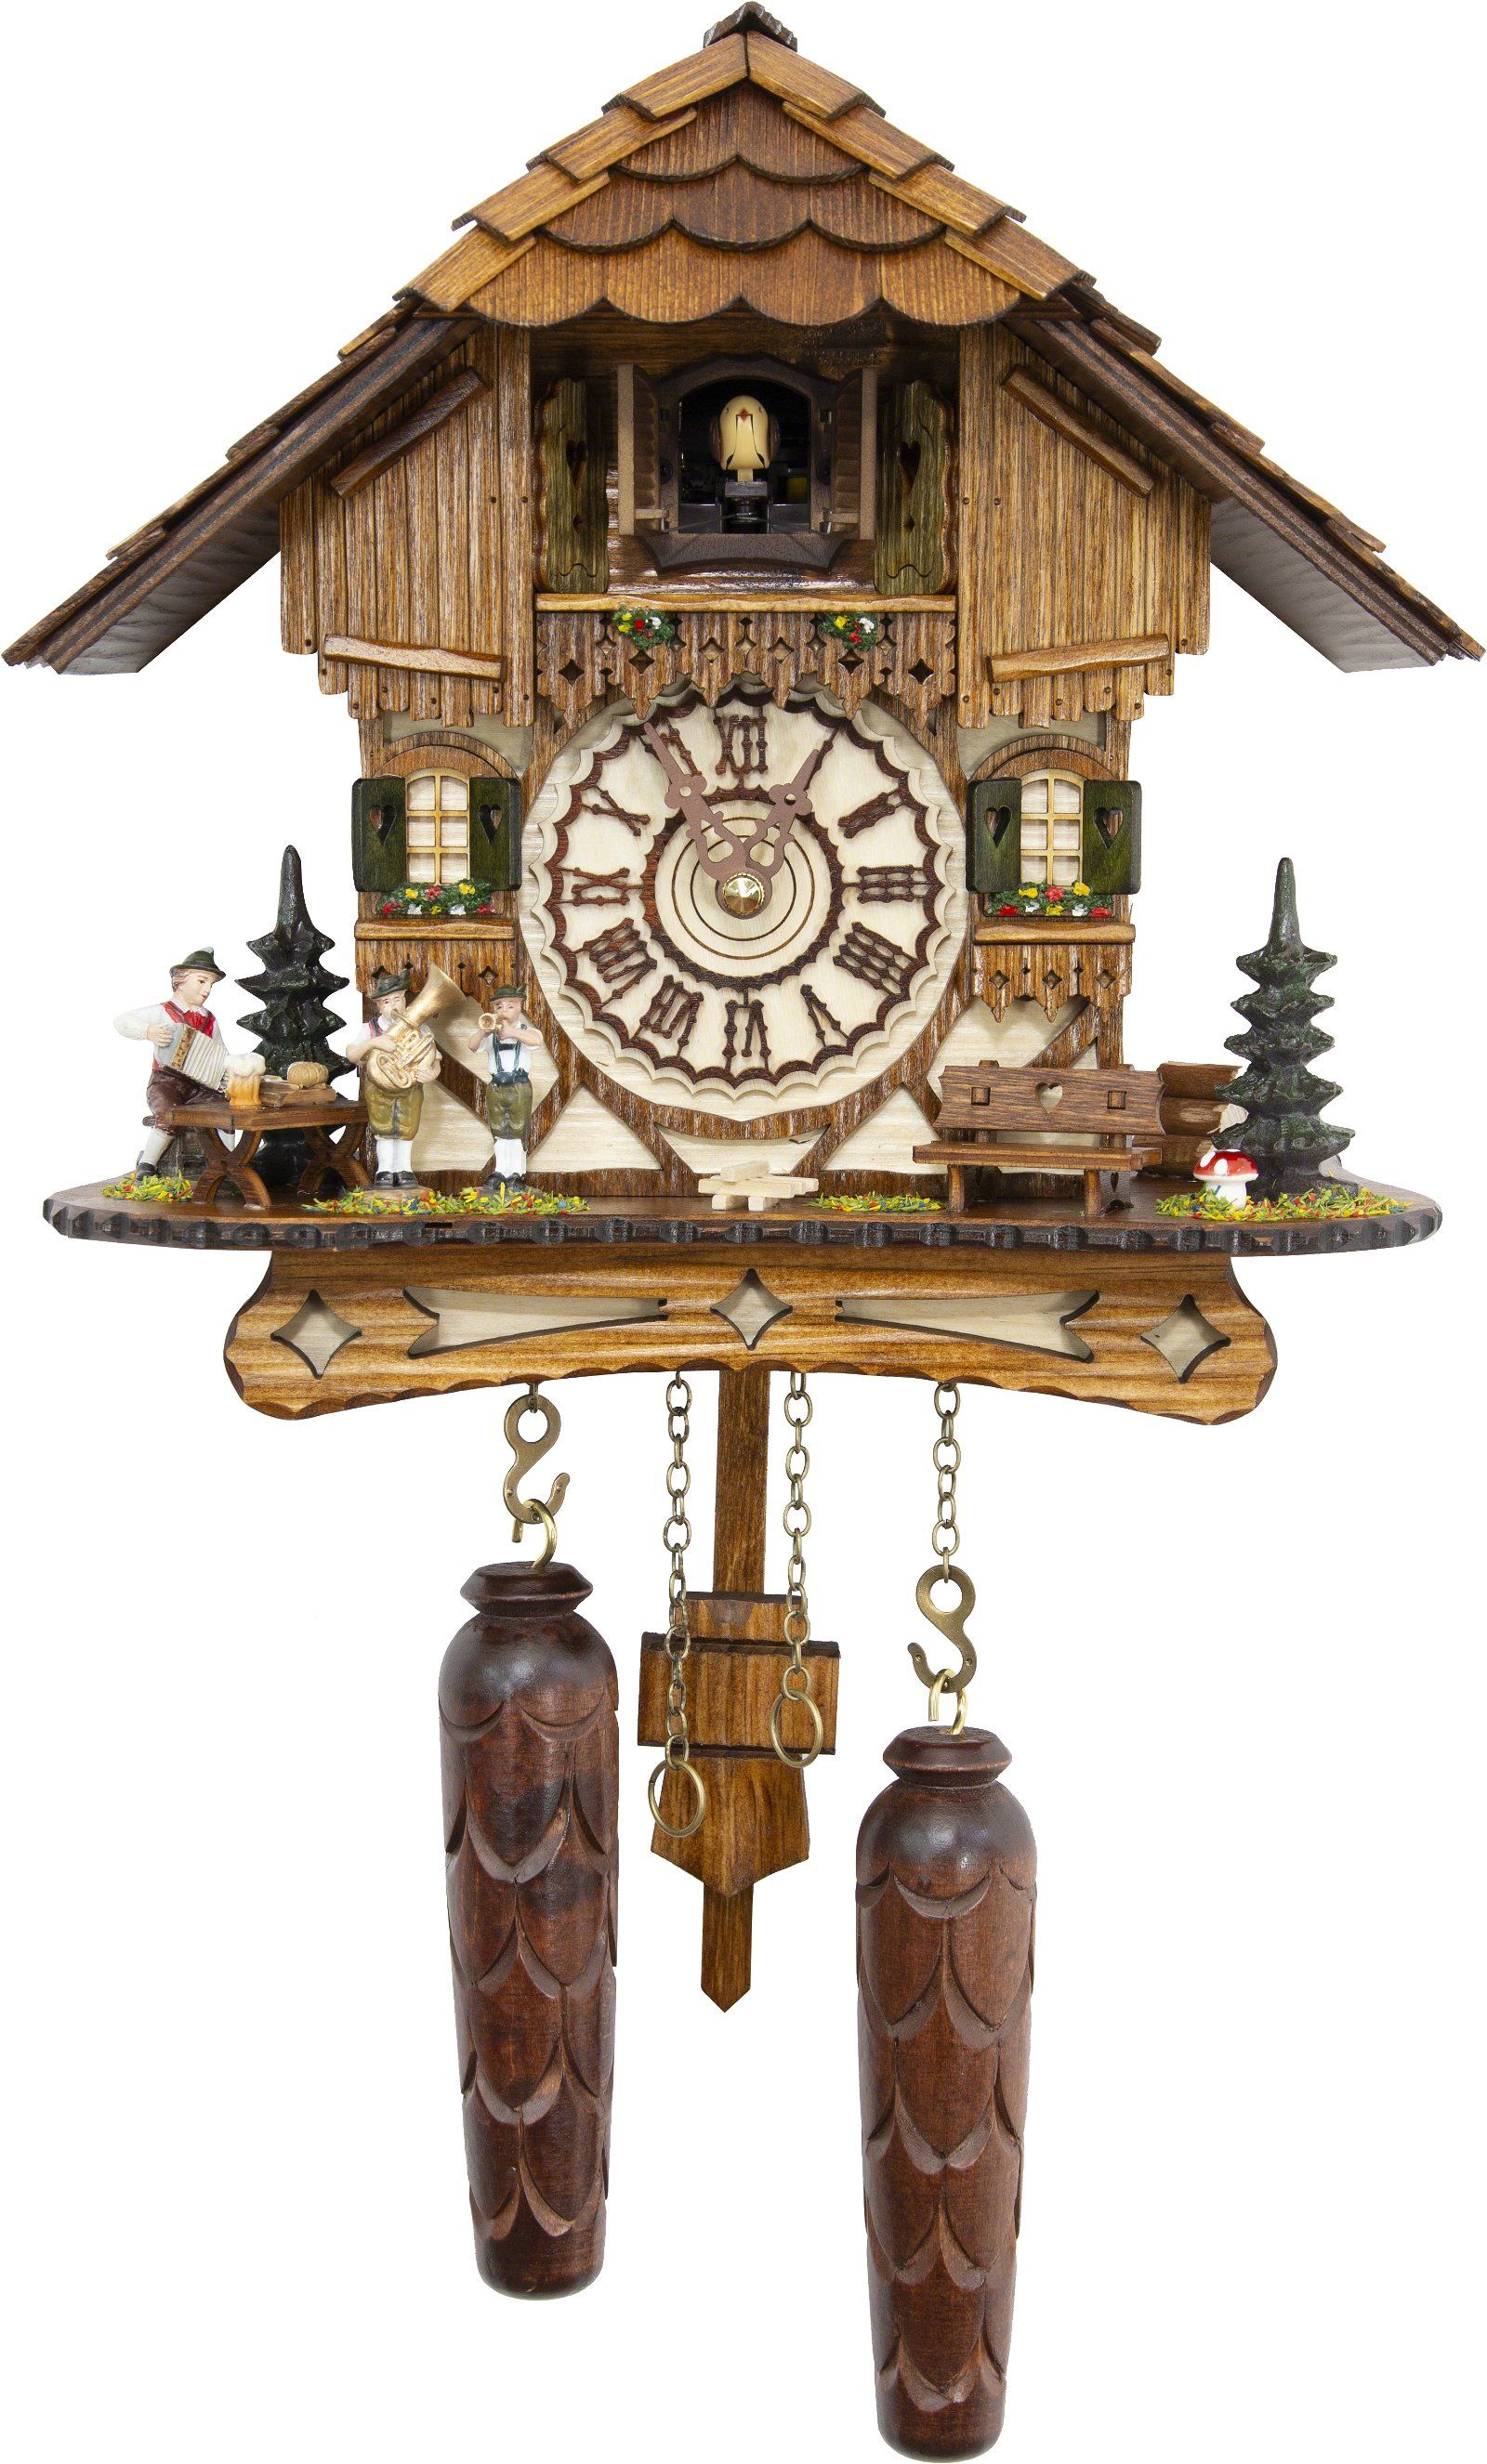 Kuckucksuhr Quarz-Uhrwerk Chalet-Stil 24cm von Trenkle Uhren